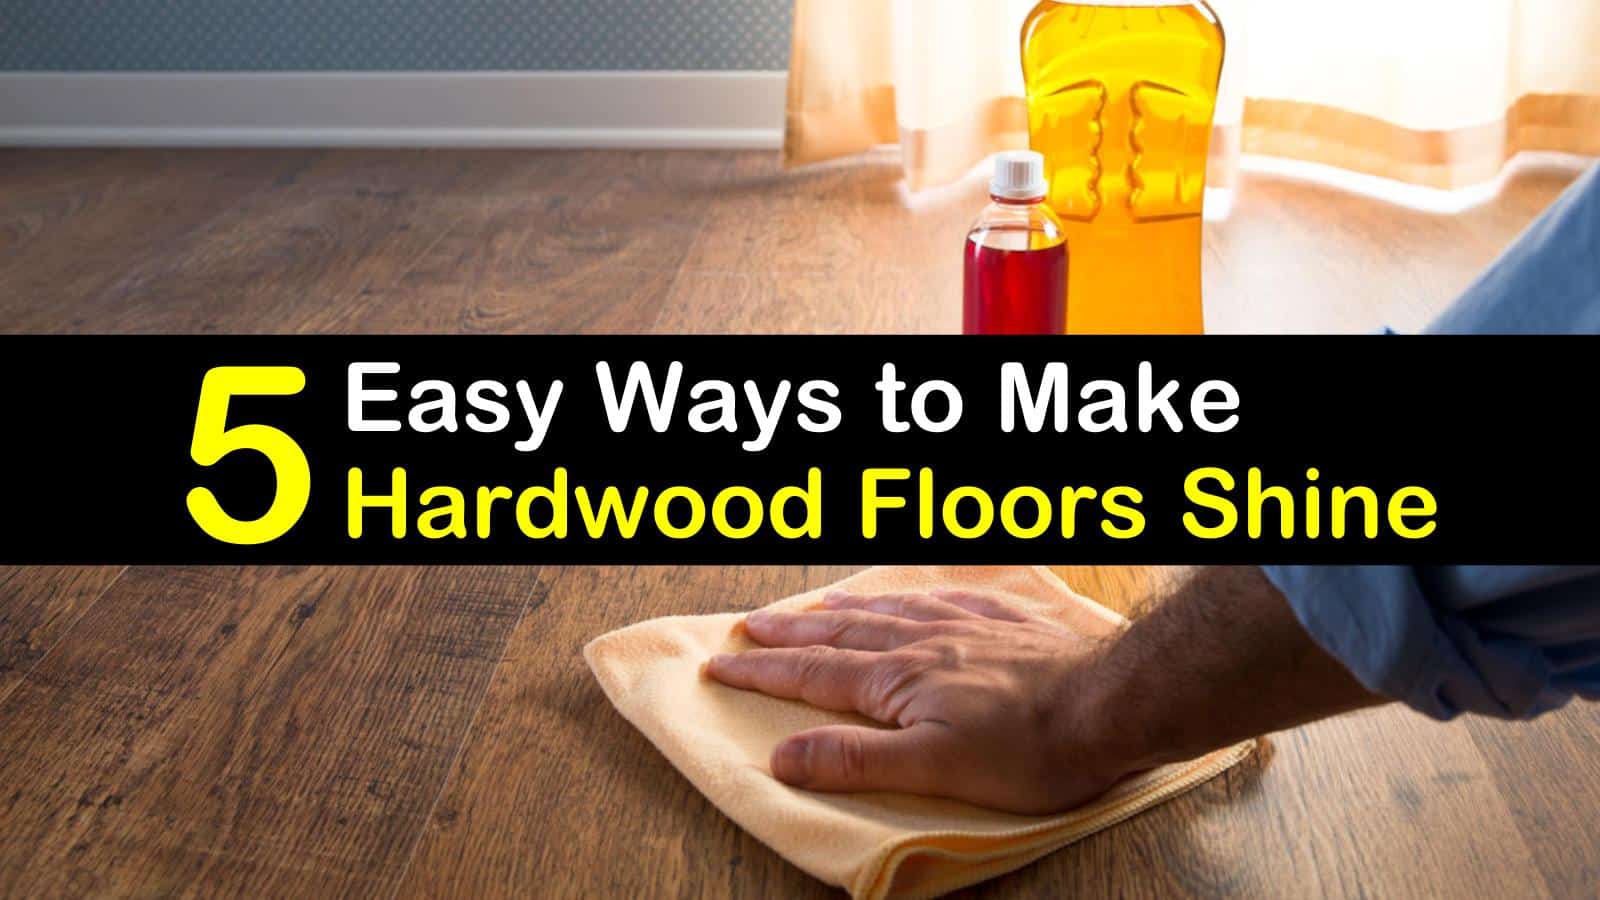 5 Easy Ways To Make Hardwood Floors Shine, Make Laminate Wood Floors Shine